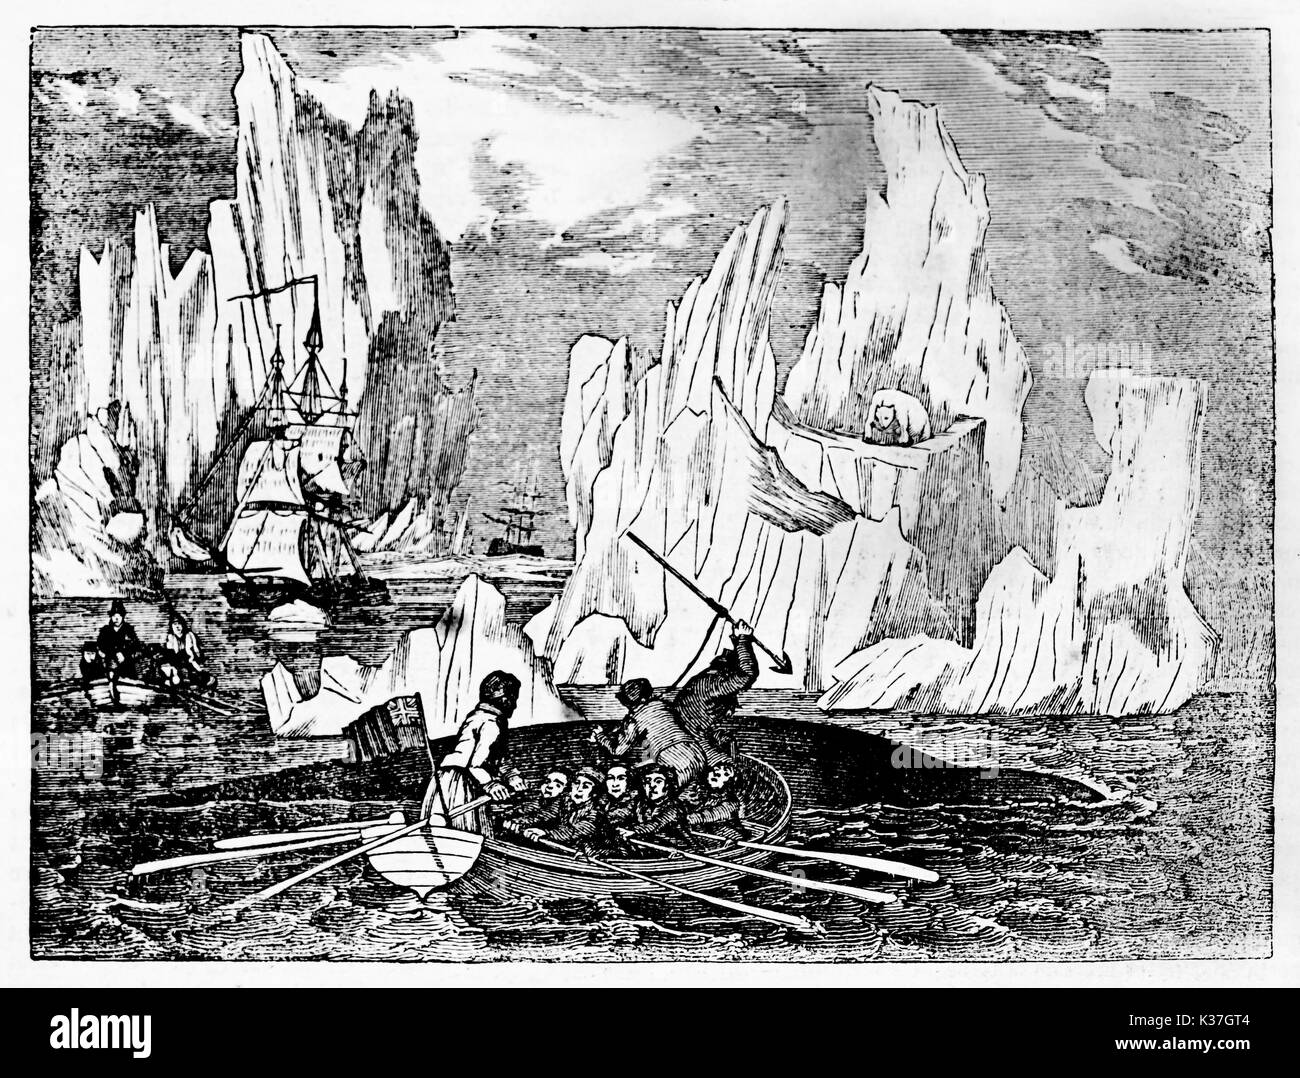 Les anciens illustration d'un voile à la baleine dans la mer du Nord froid d'icebergs sur l'arrière-plan. Vieille Illustration d'auteur non identifié publié le magasin pittoresque Paris 1834 Banque D'Images